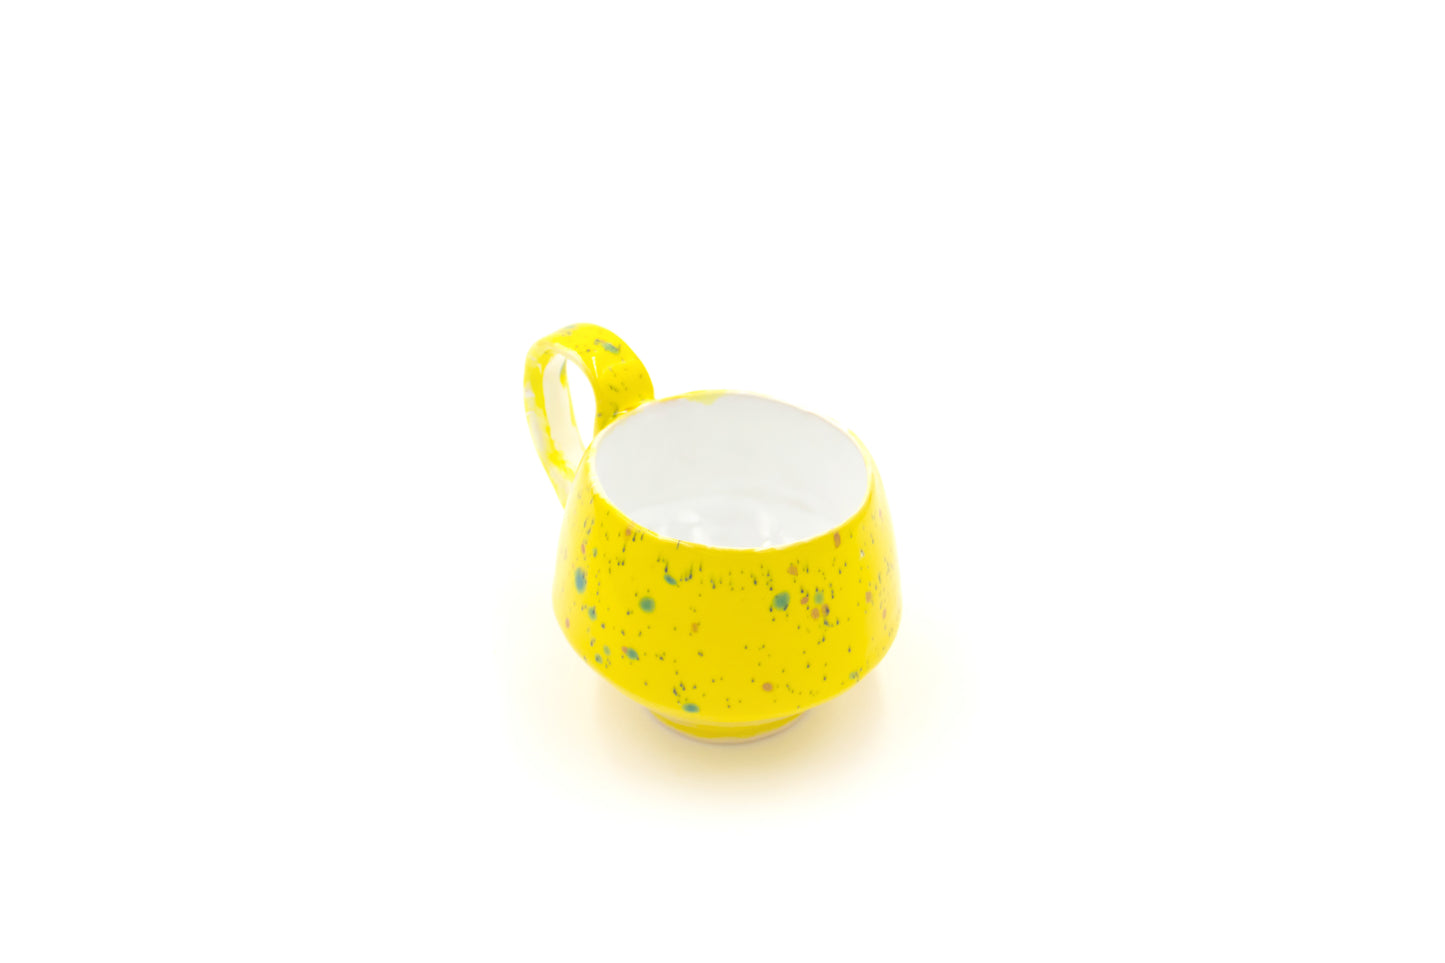 Kubek ceramiczny w kolorze żółtym oraz kropkami